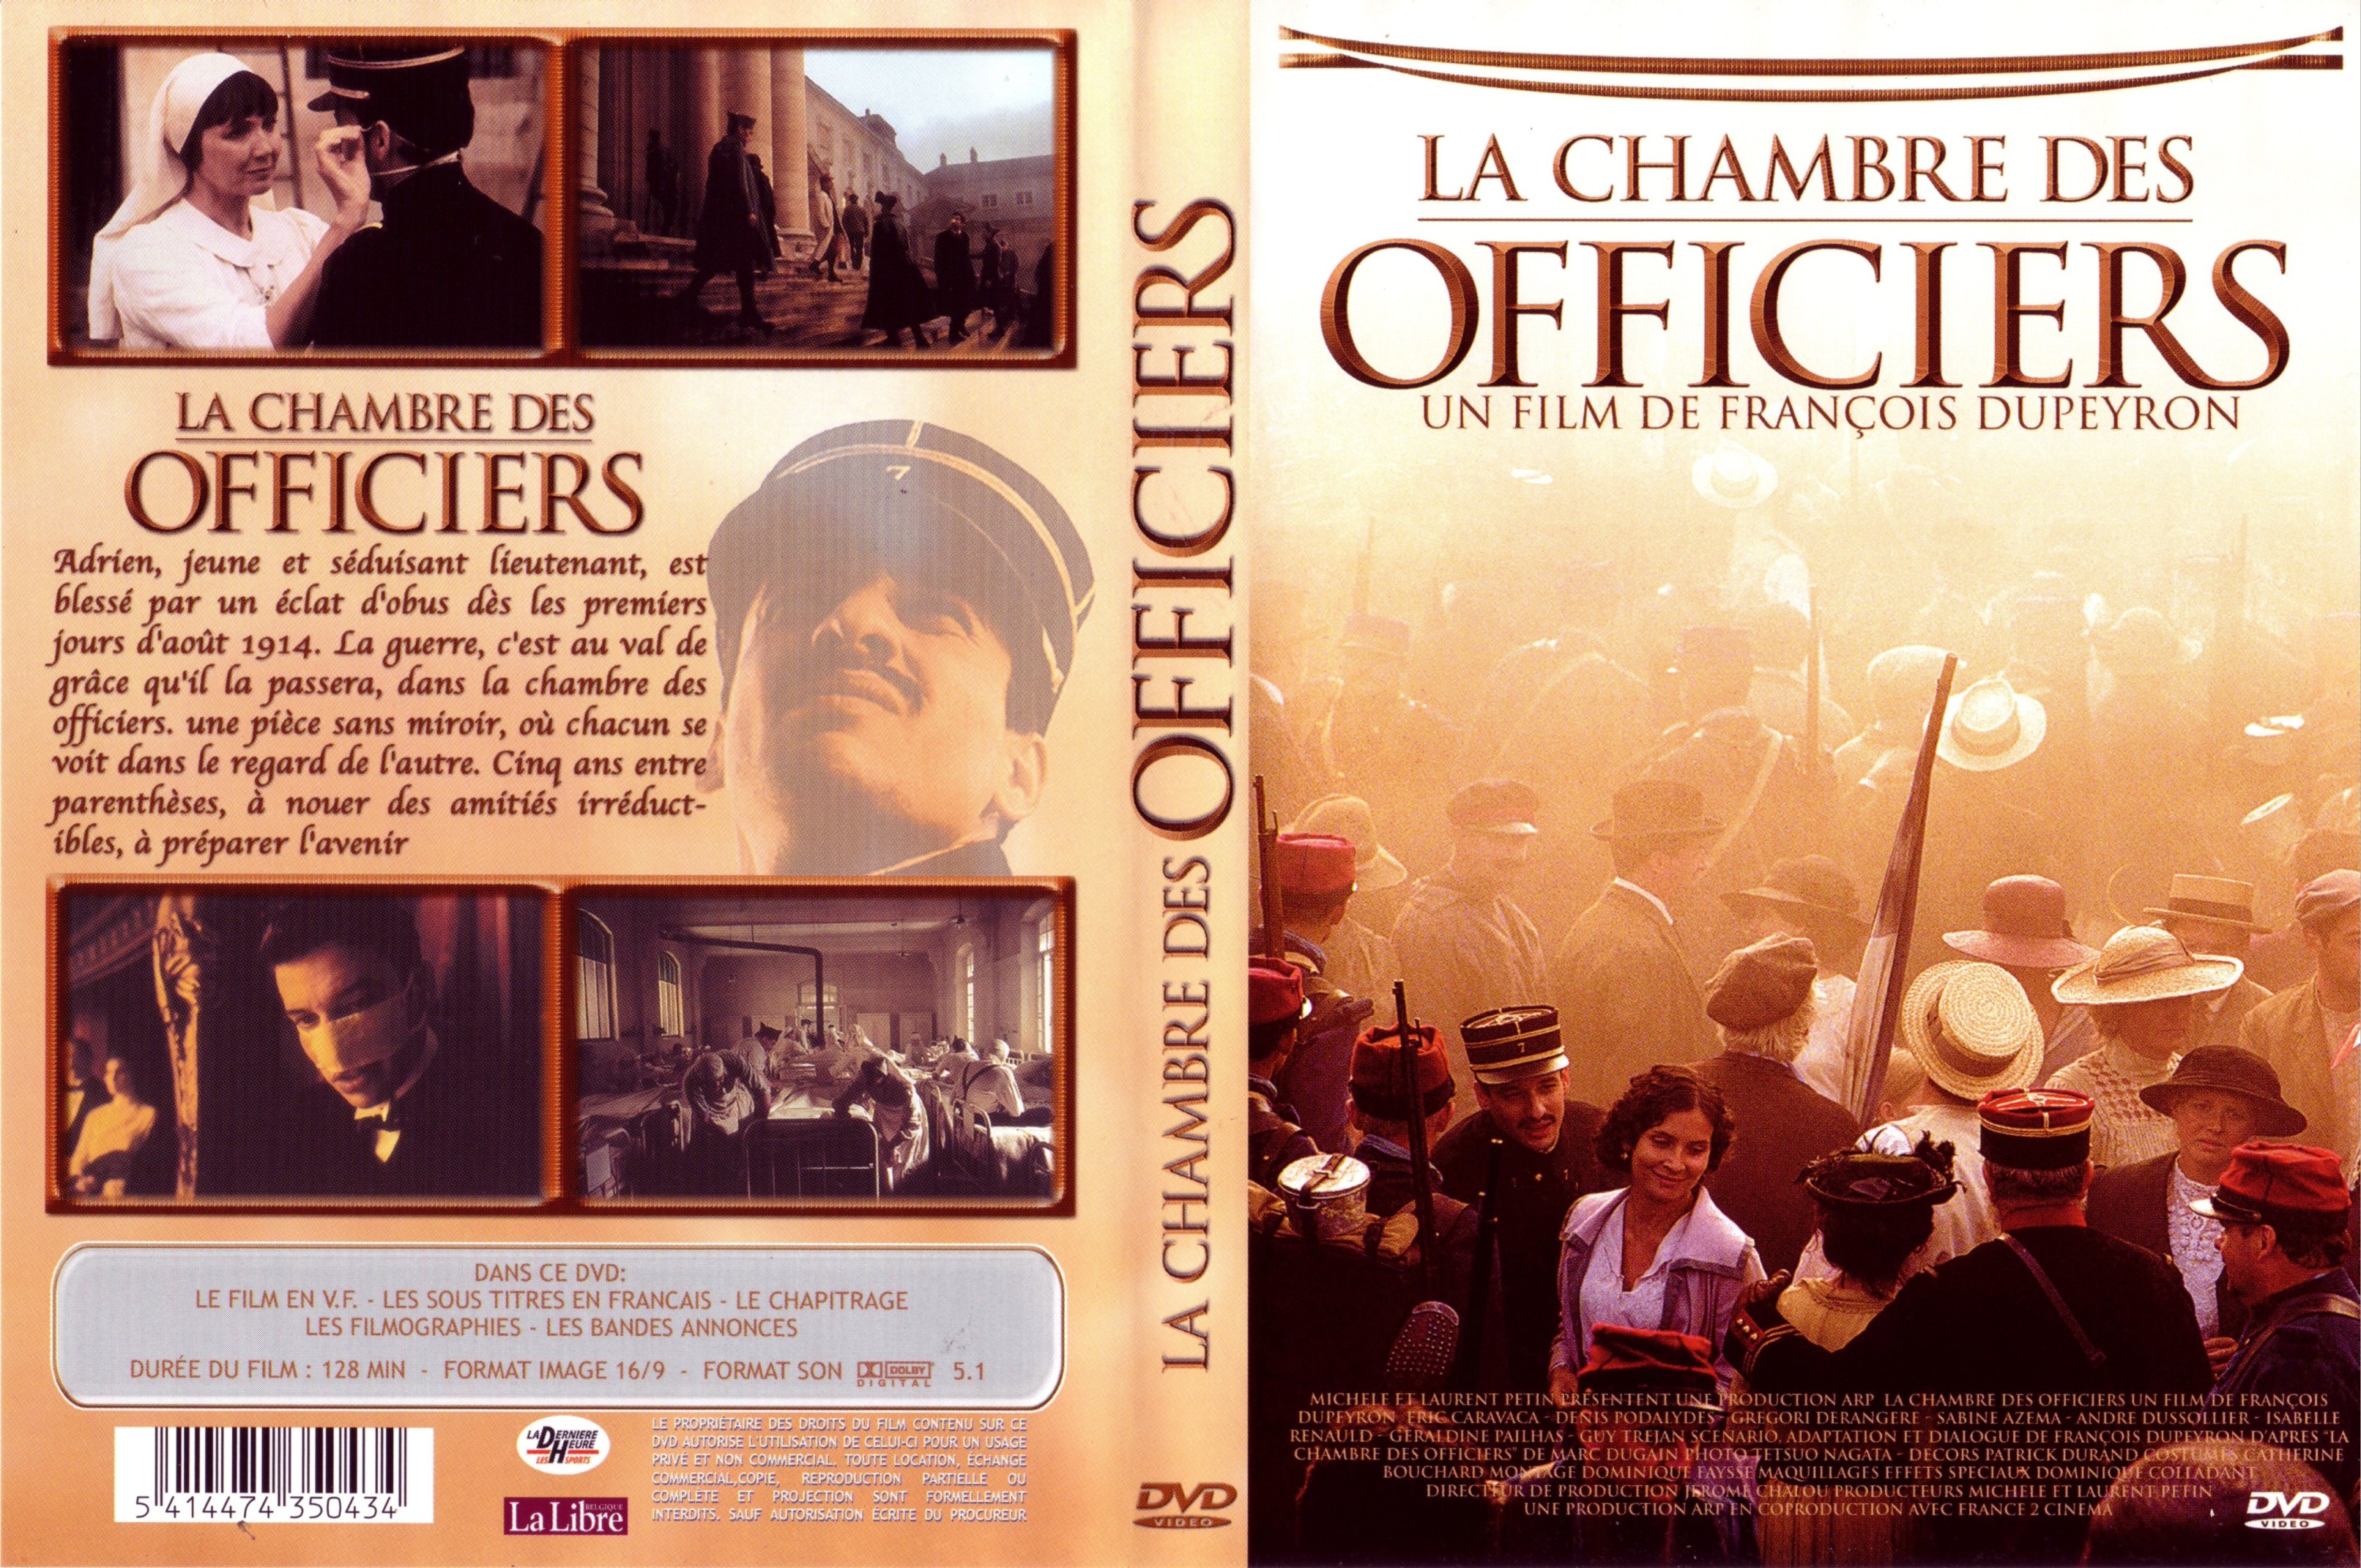 Jaquette DVD de La chambre des officiers Cinéma Passion